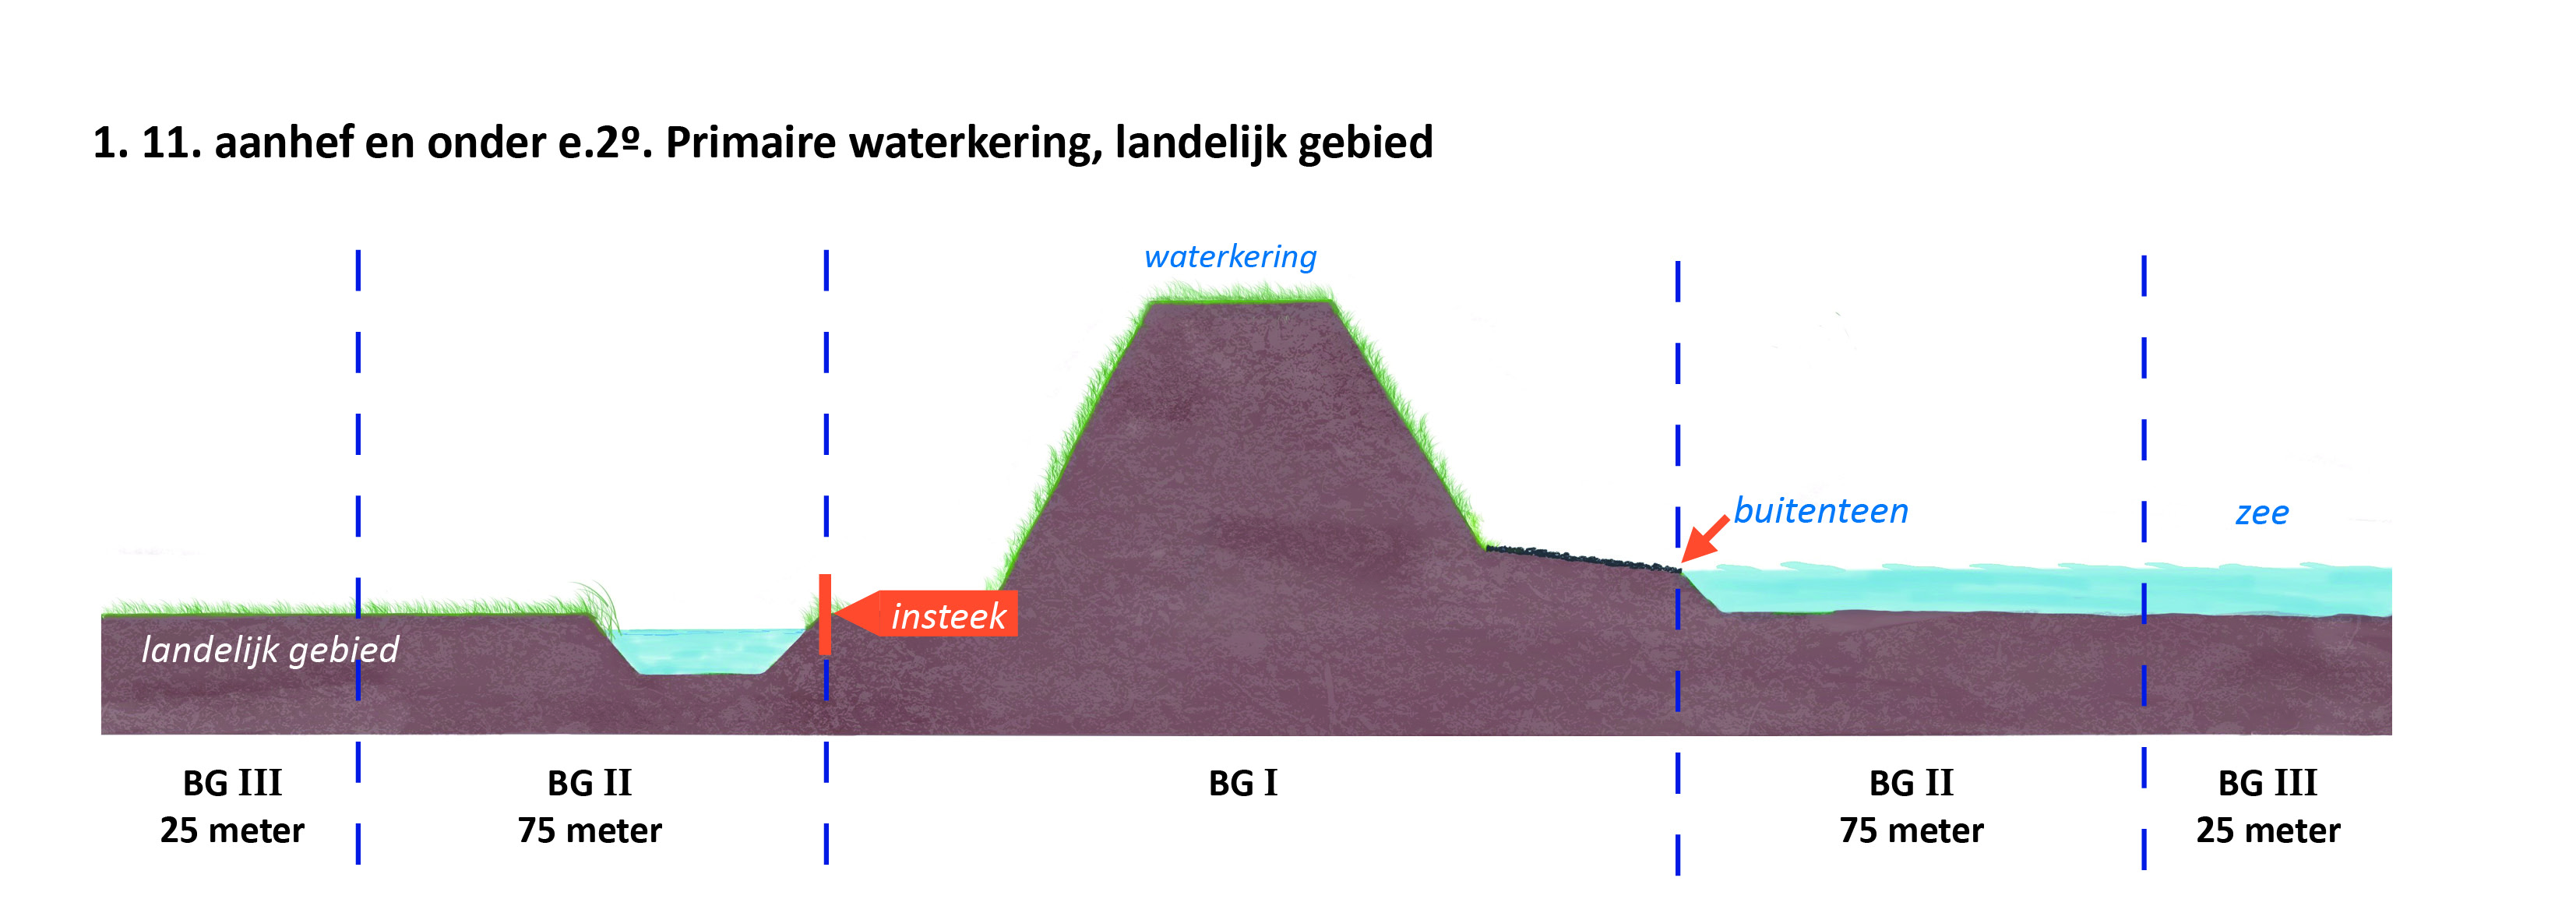 waterschapsverordening - bijlage 2 - 4-1.11.e2